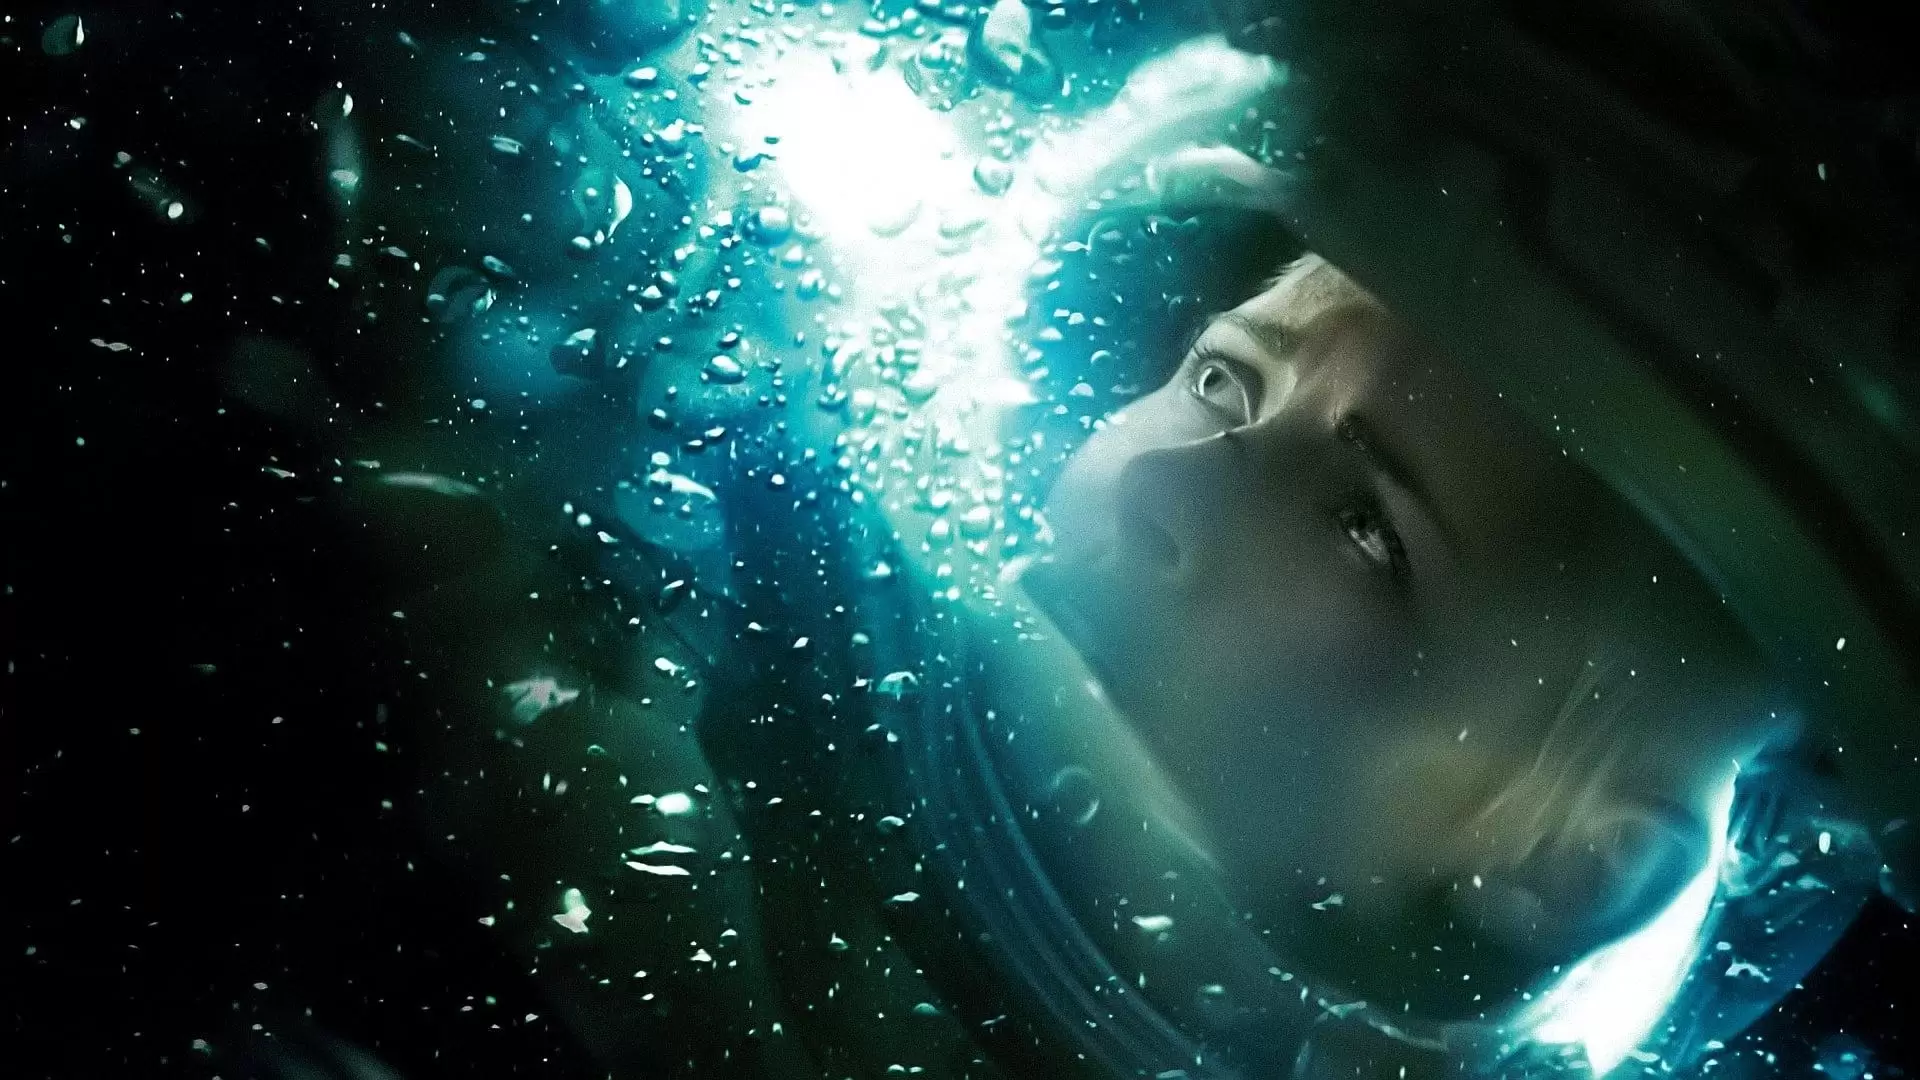 دانلود فیلم Underwater 2020 (زیر آب) با زیرنویس فارسی و تماشای آنلاین